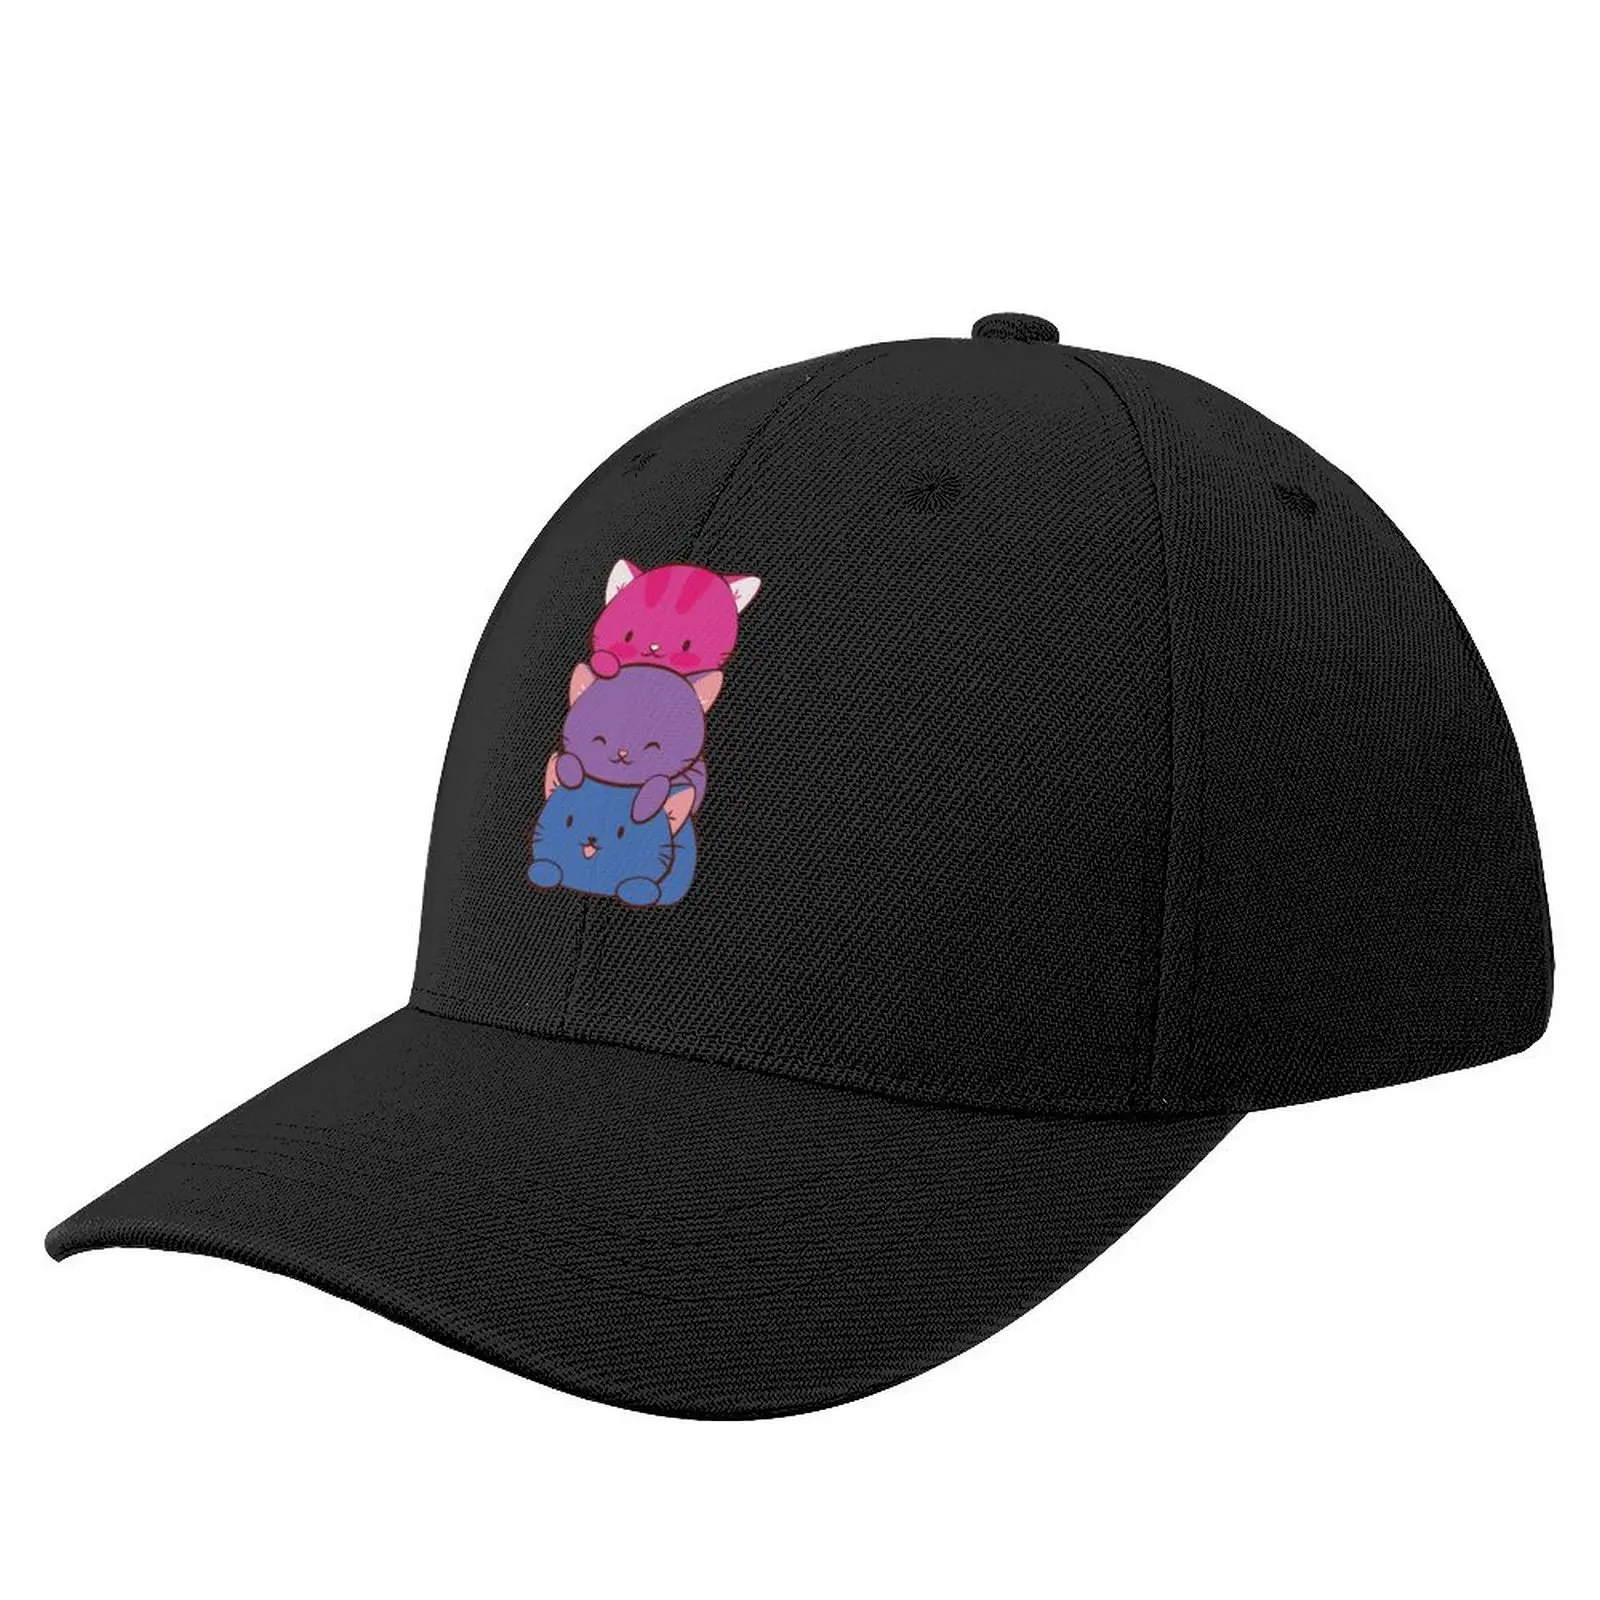 

Bisexual Flag LGBT Bi Pride Cute Kawaii Cats Baseball Cap hiking hat summer hat Caps For Men Women's